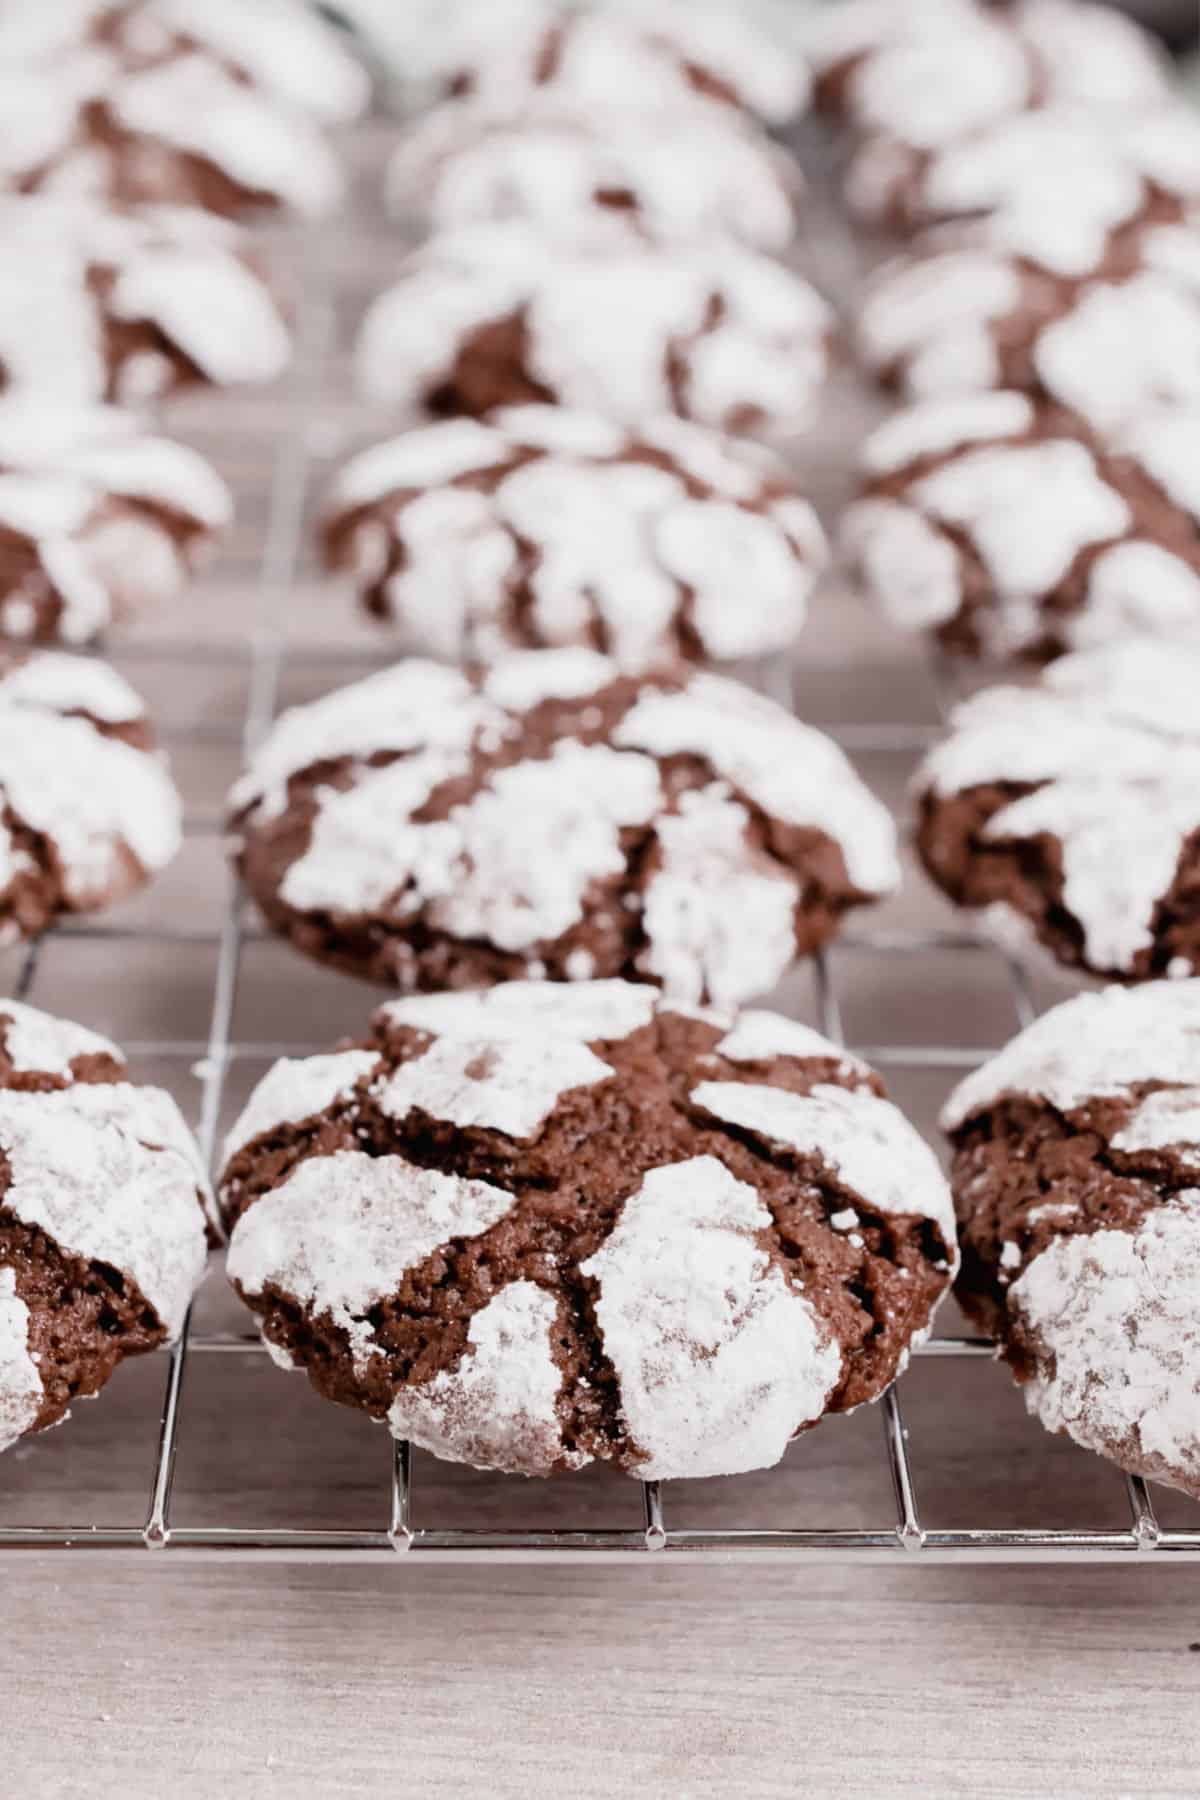 Chocolate crinkle cookies with powdered sugar on metal cooling rack.